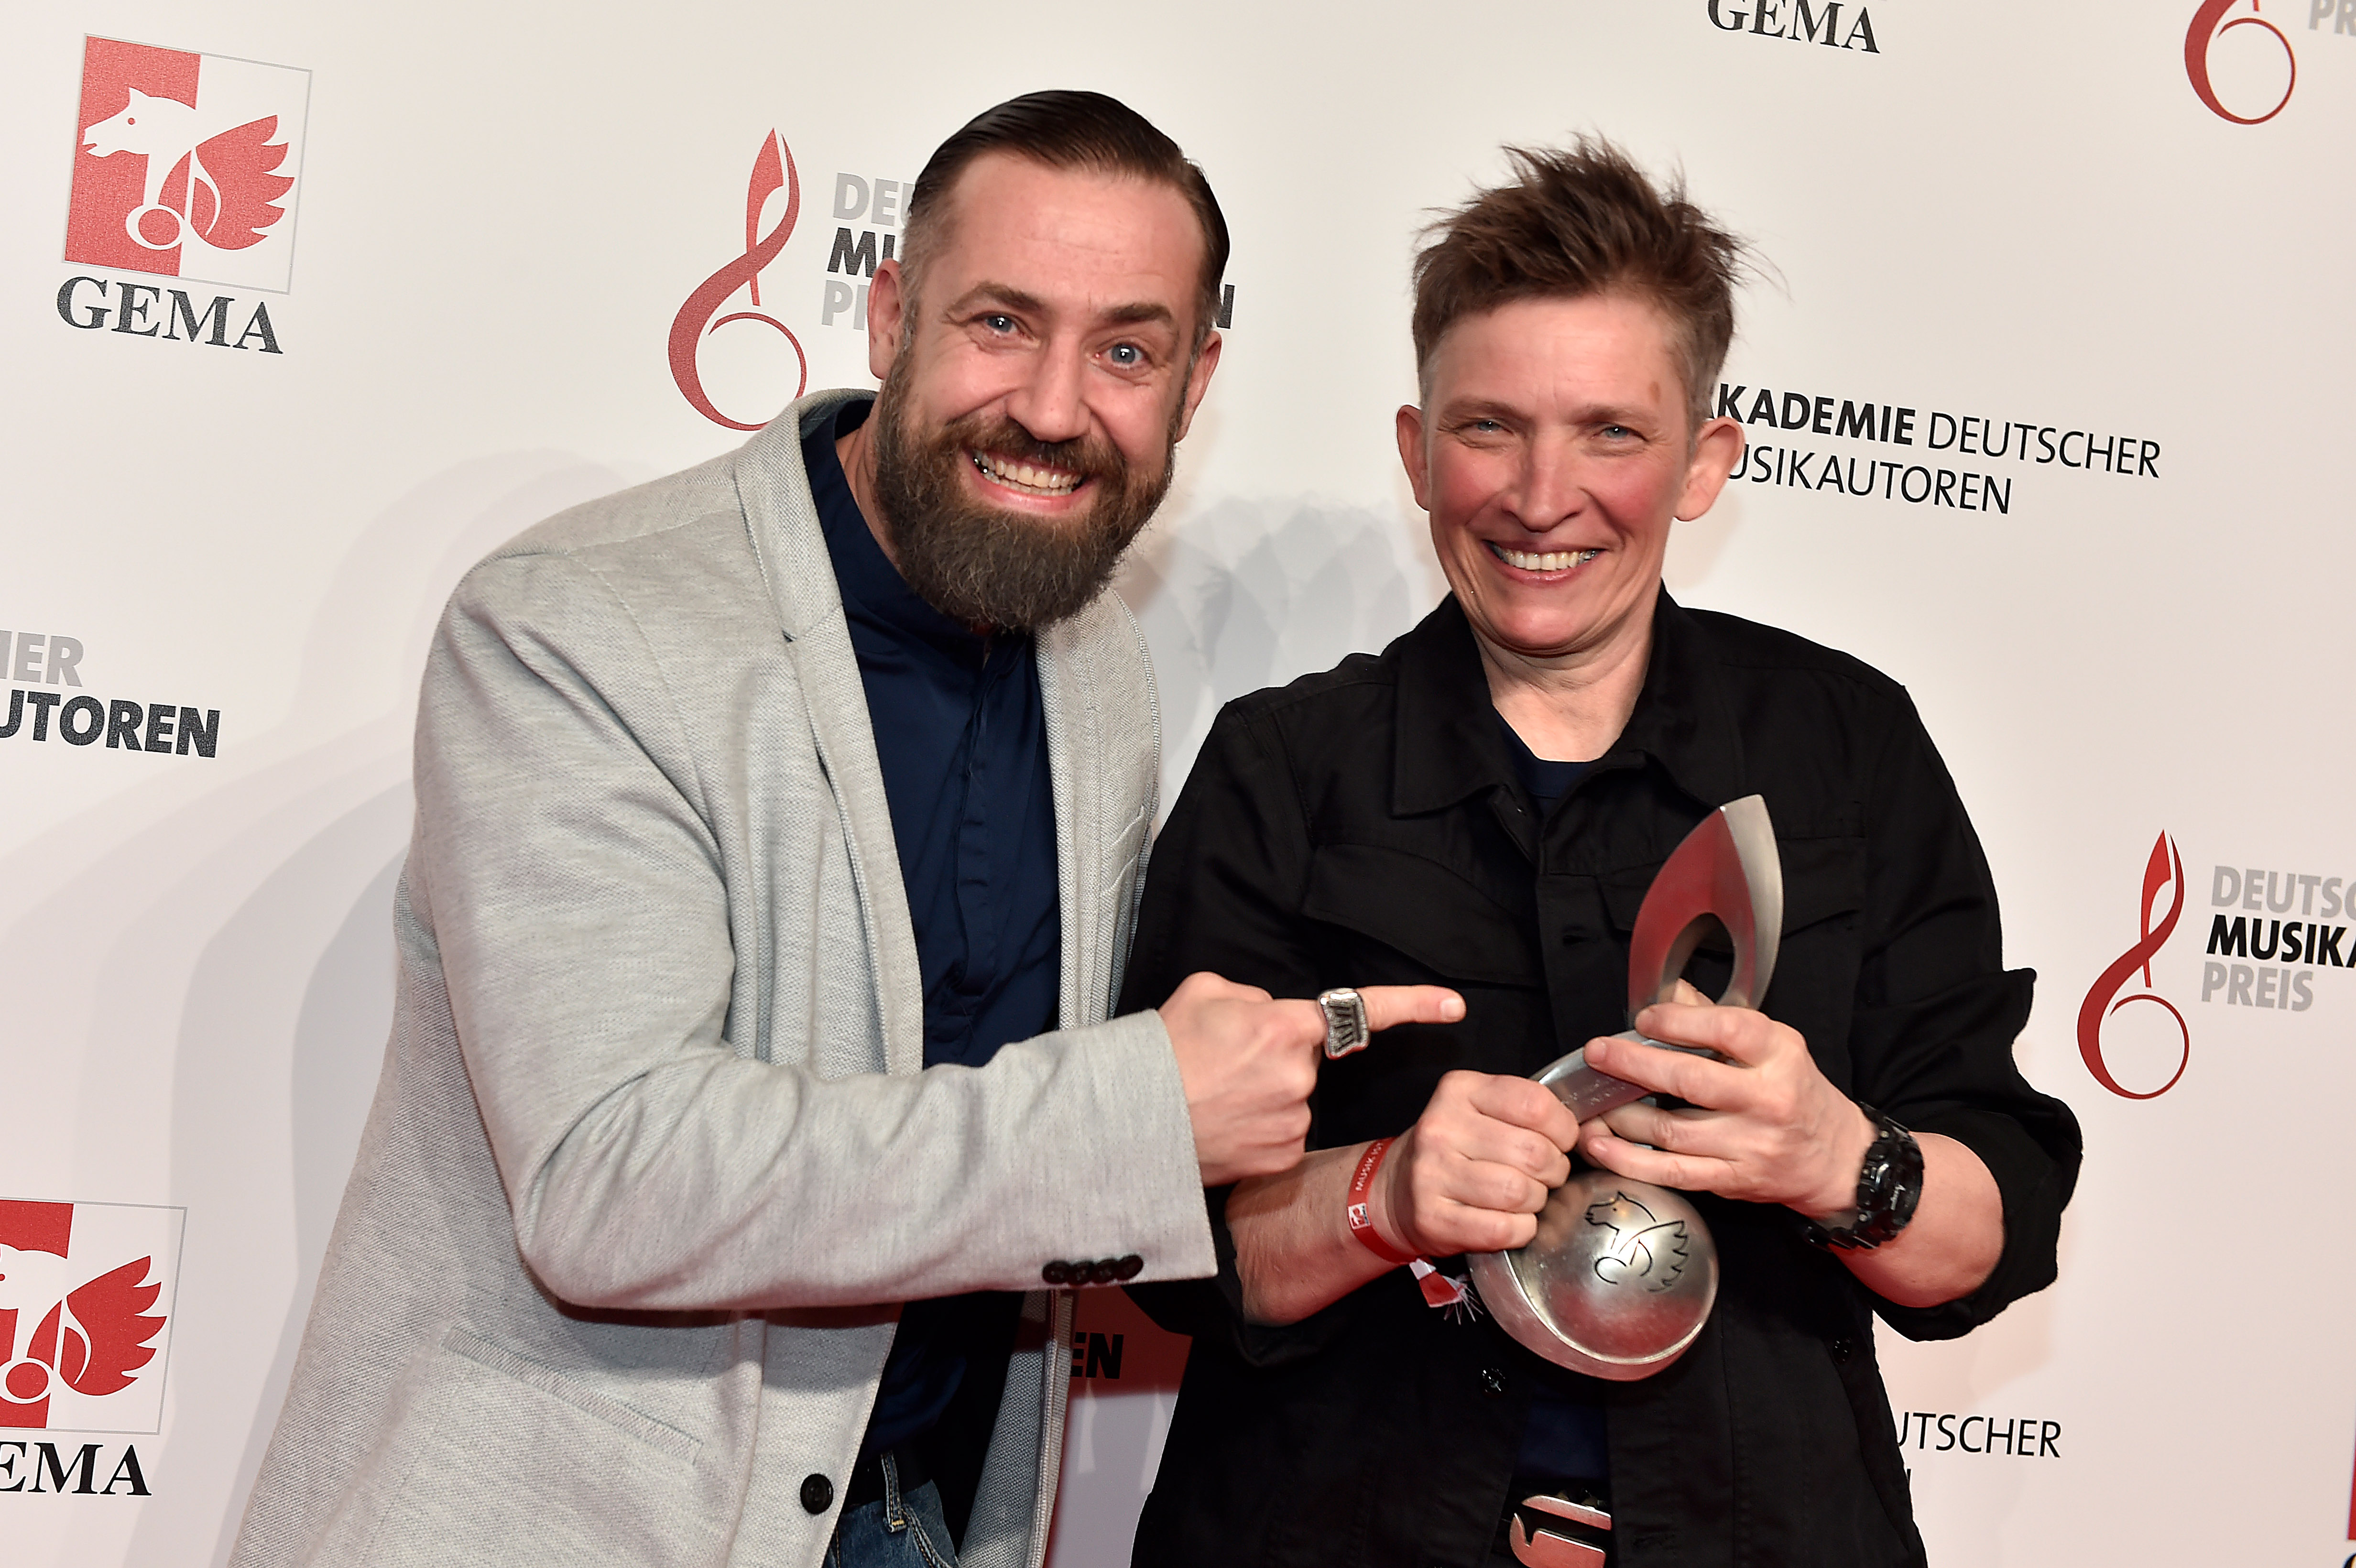 11. Verleihung des Deutschen Musikautorenpreis – Preisträger im Hotel Ritz Carlton in Berlin am 14.03.2019